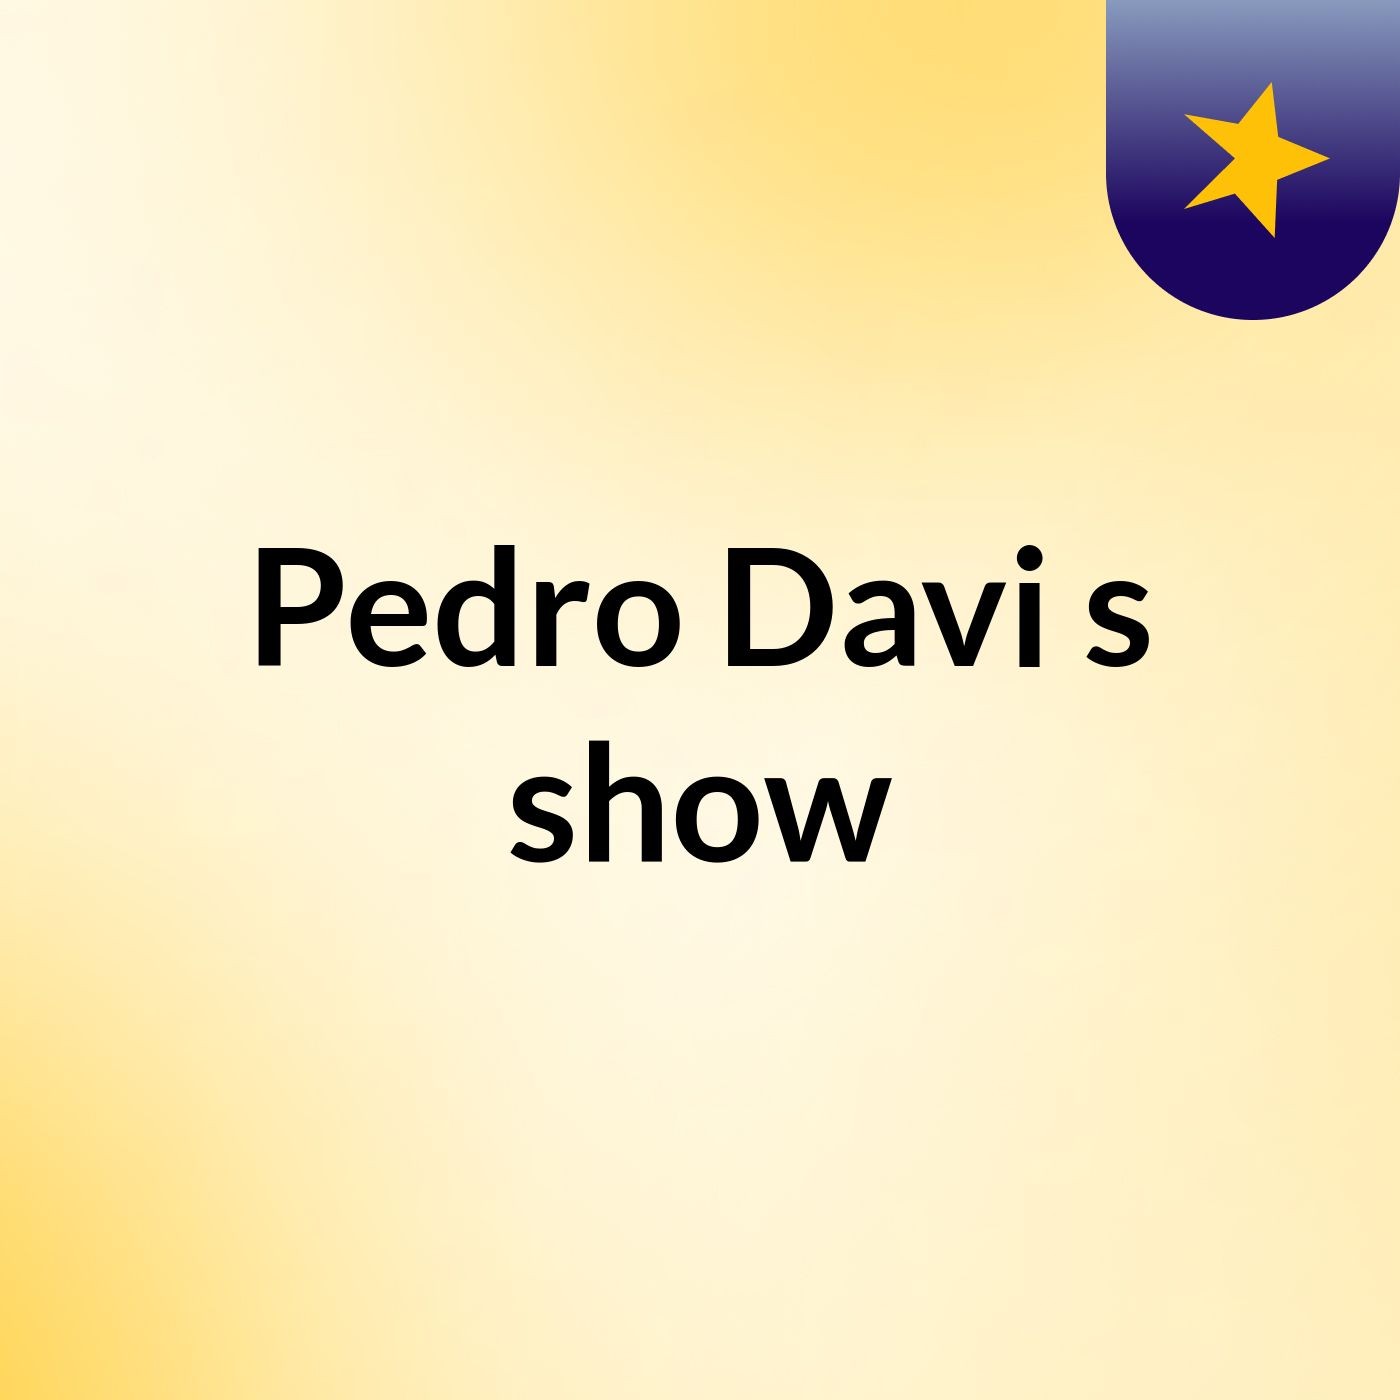 Pedro Davi's show